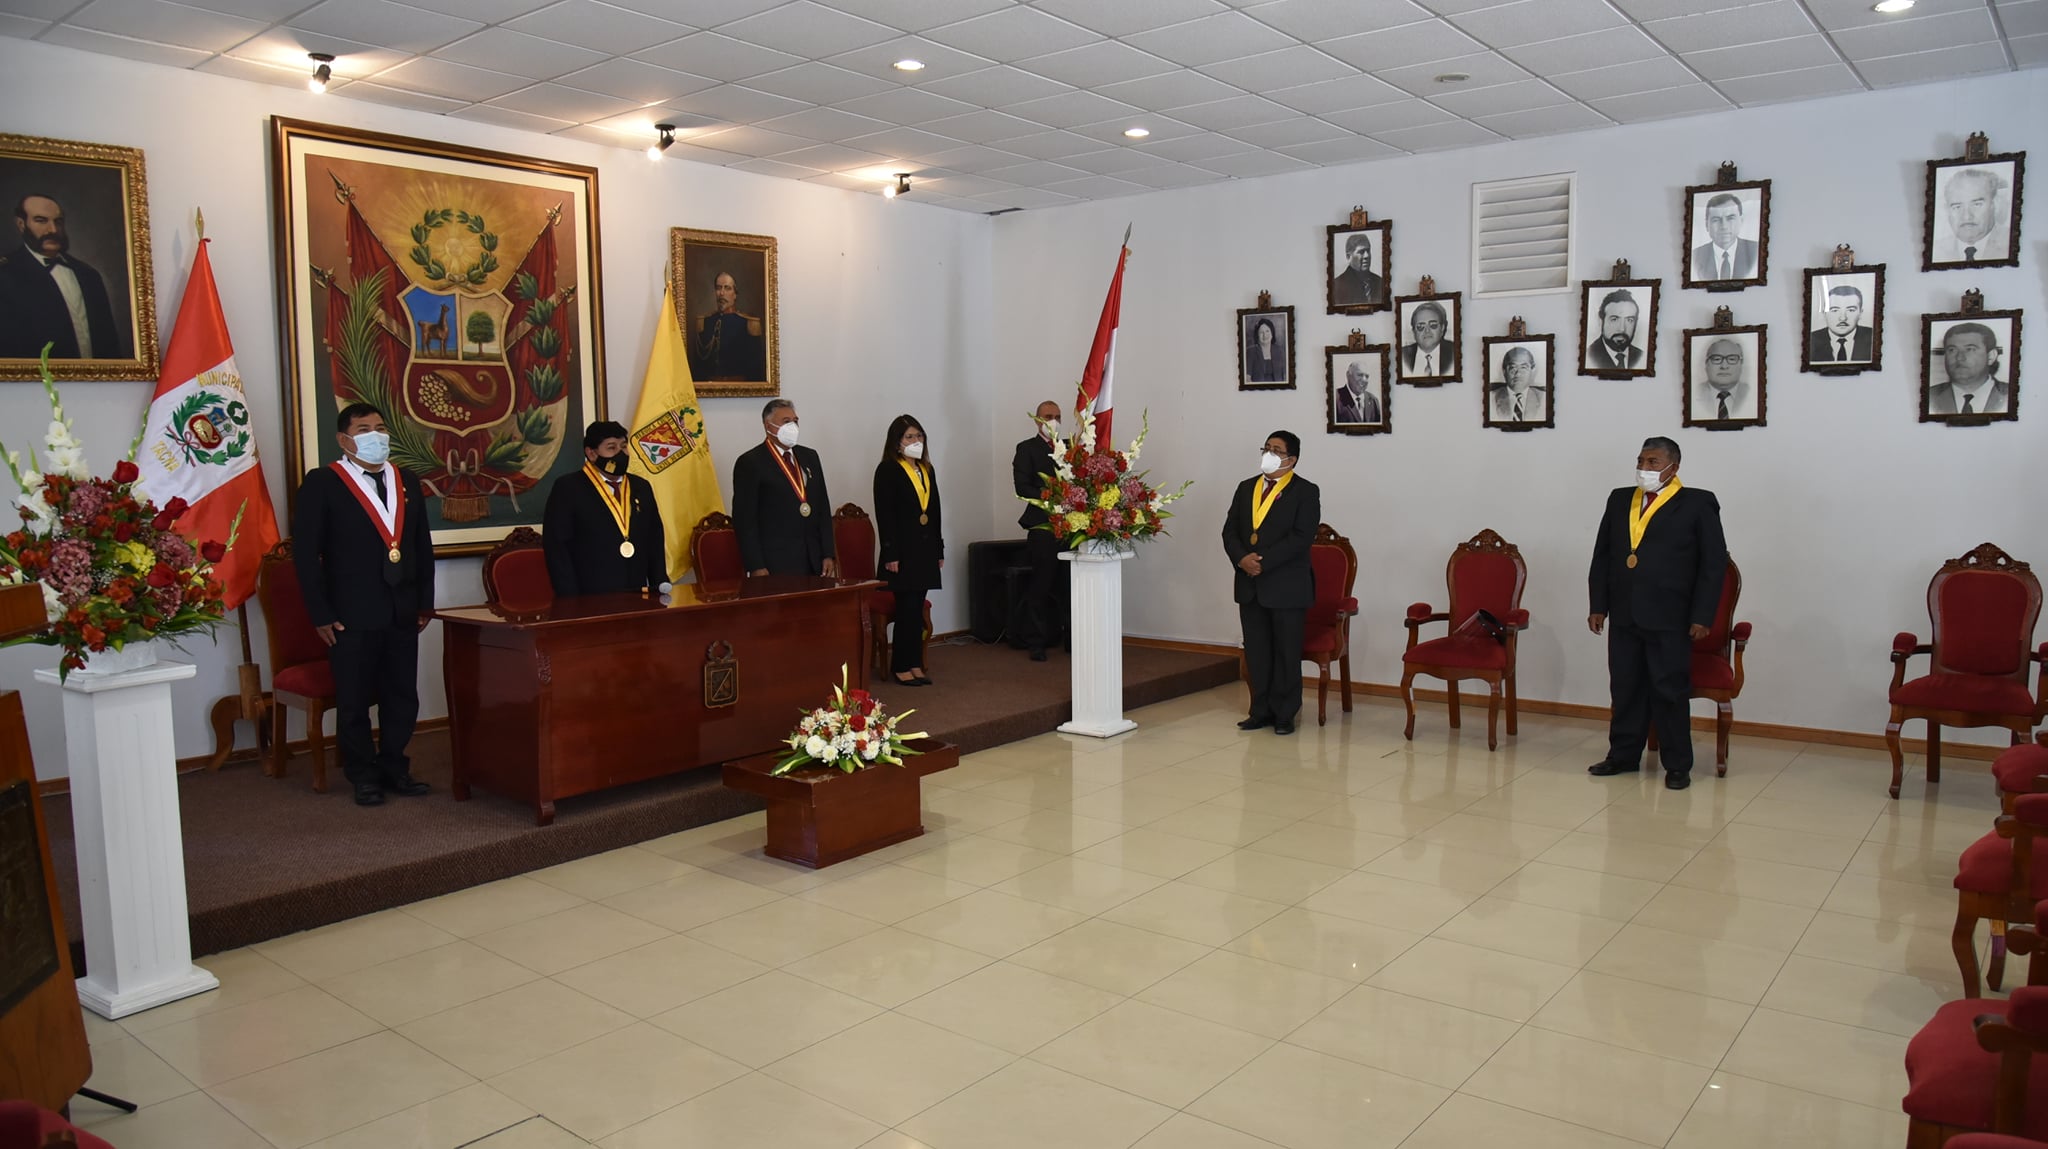 Este lunes verán en sesión de concejo pedidos de vacancia en contra del alcalde provincial de Tacna